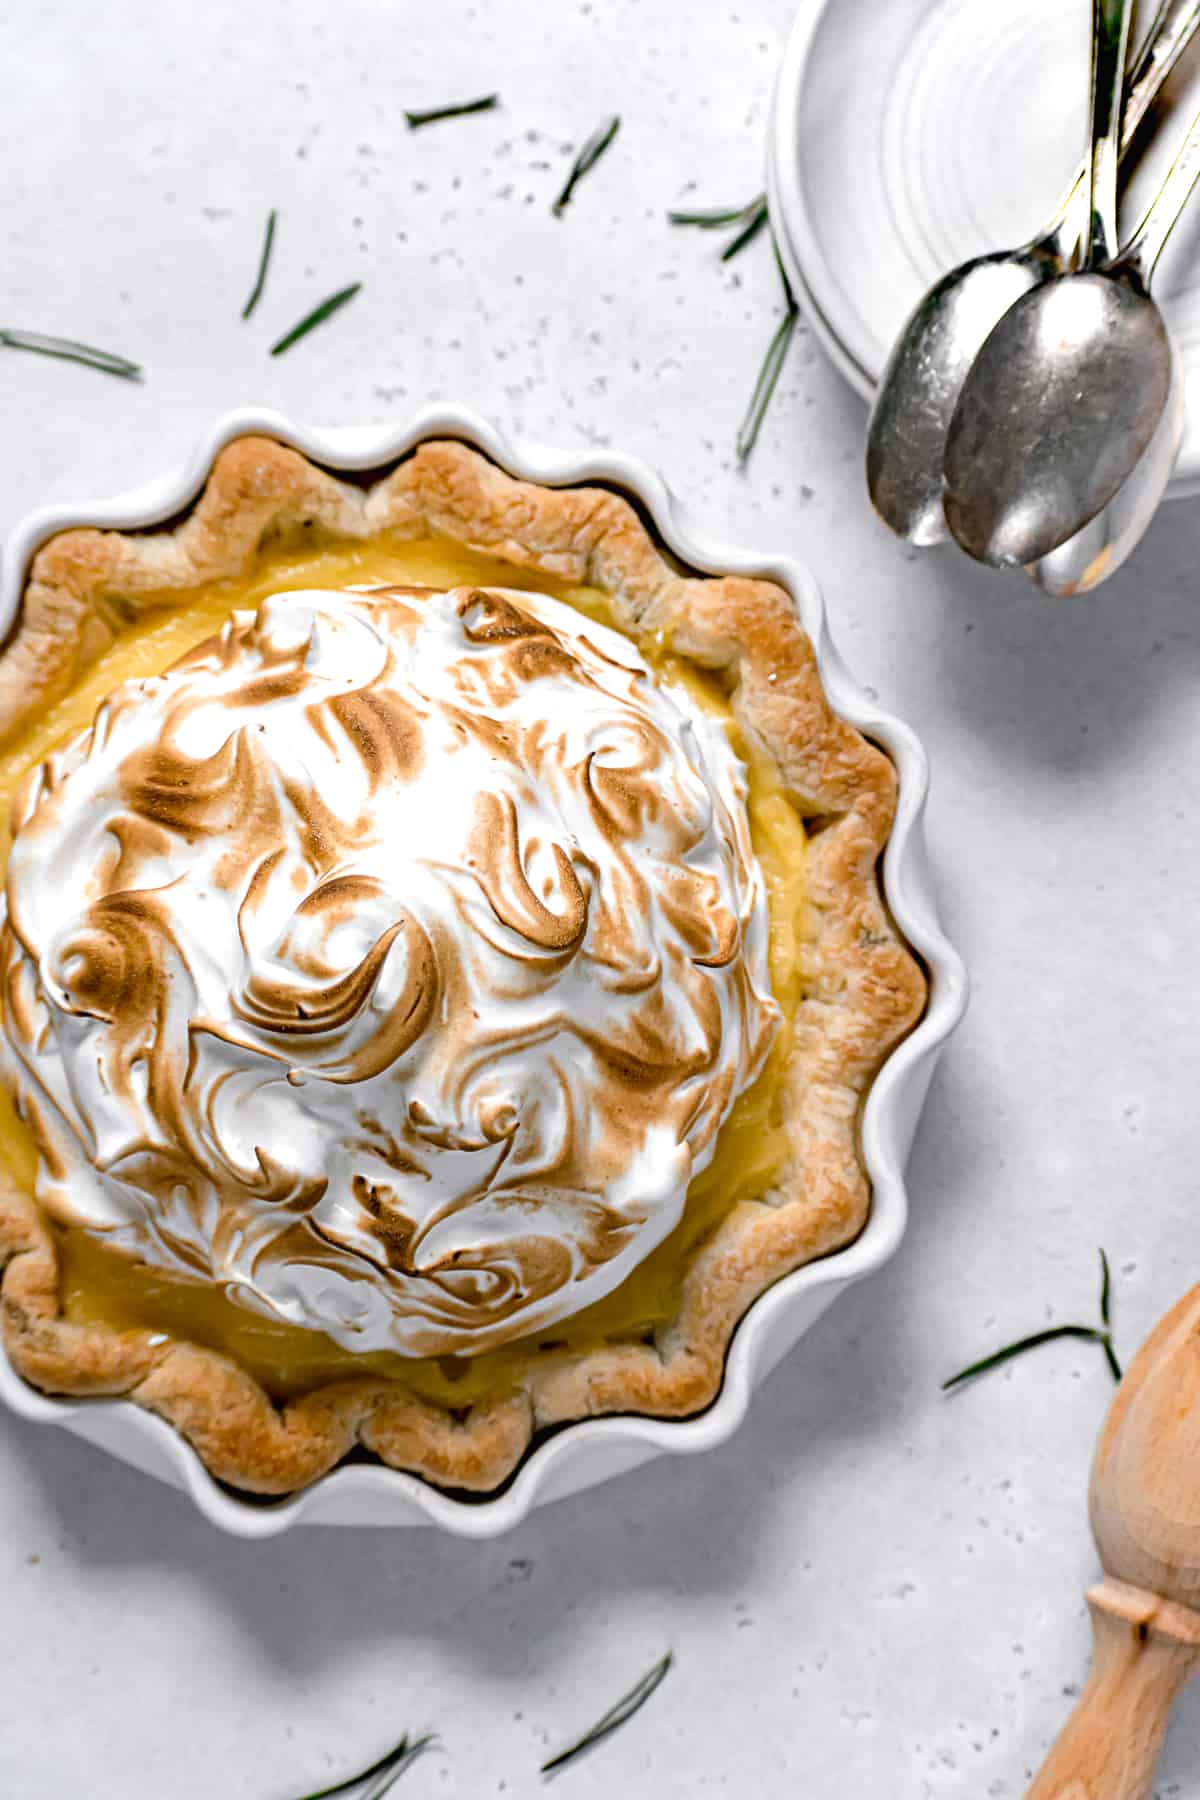 lemon meringue pie with fresh rosemary crust in white pie dish.